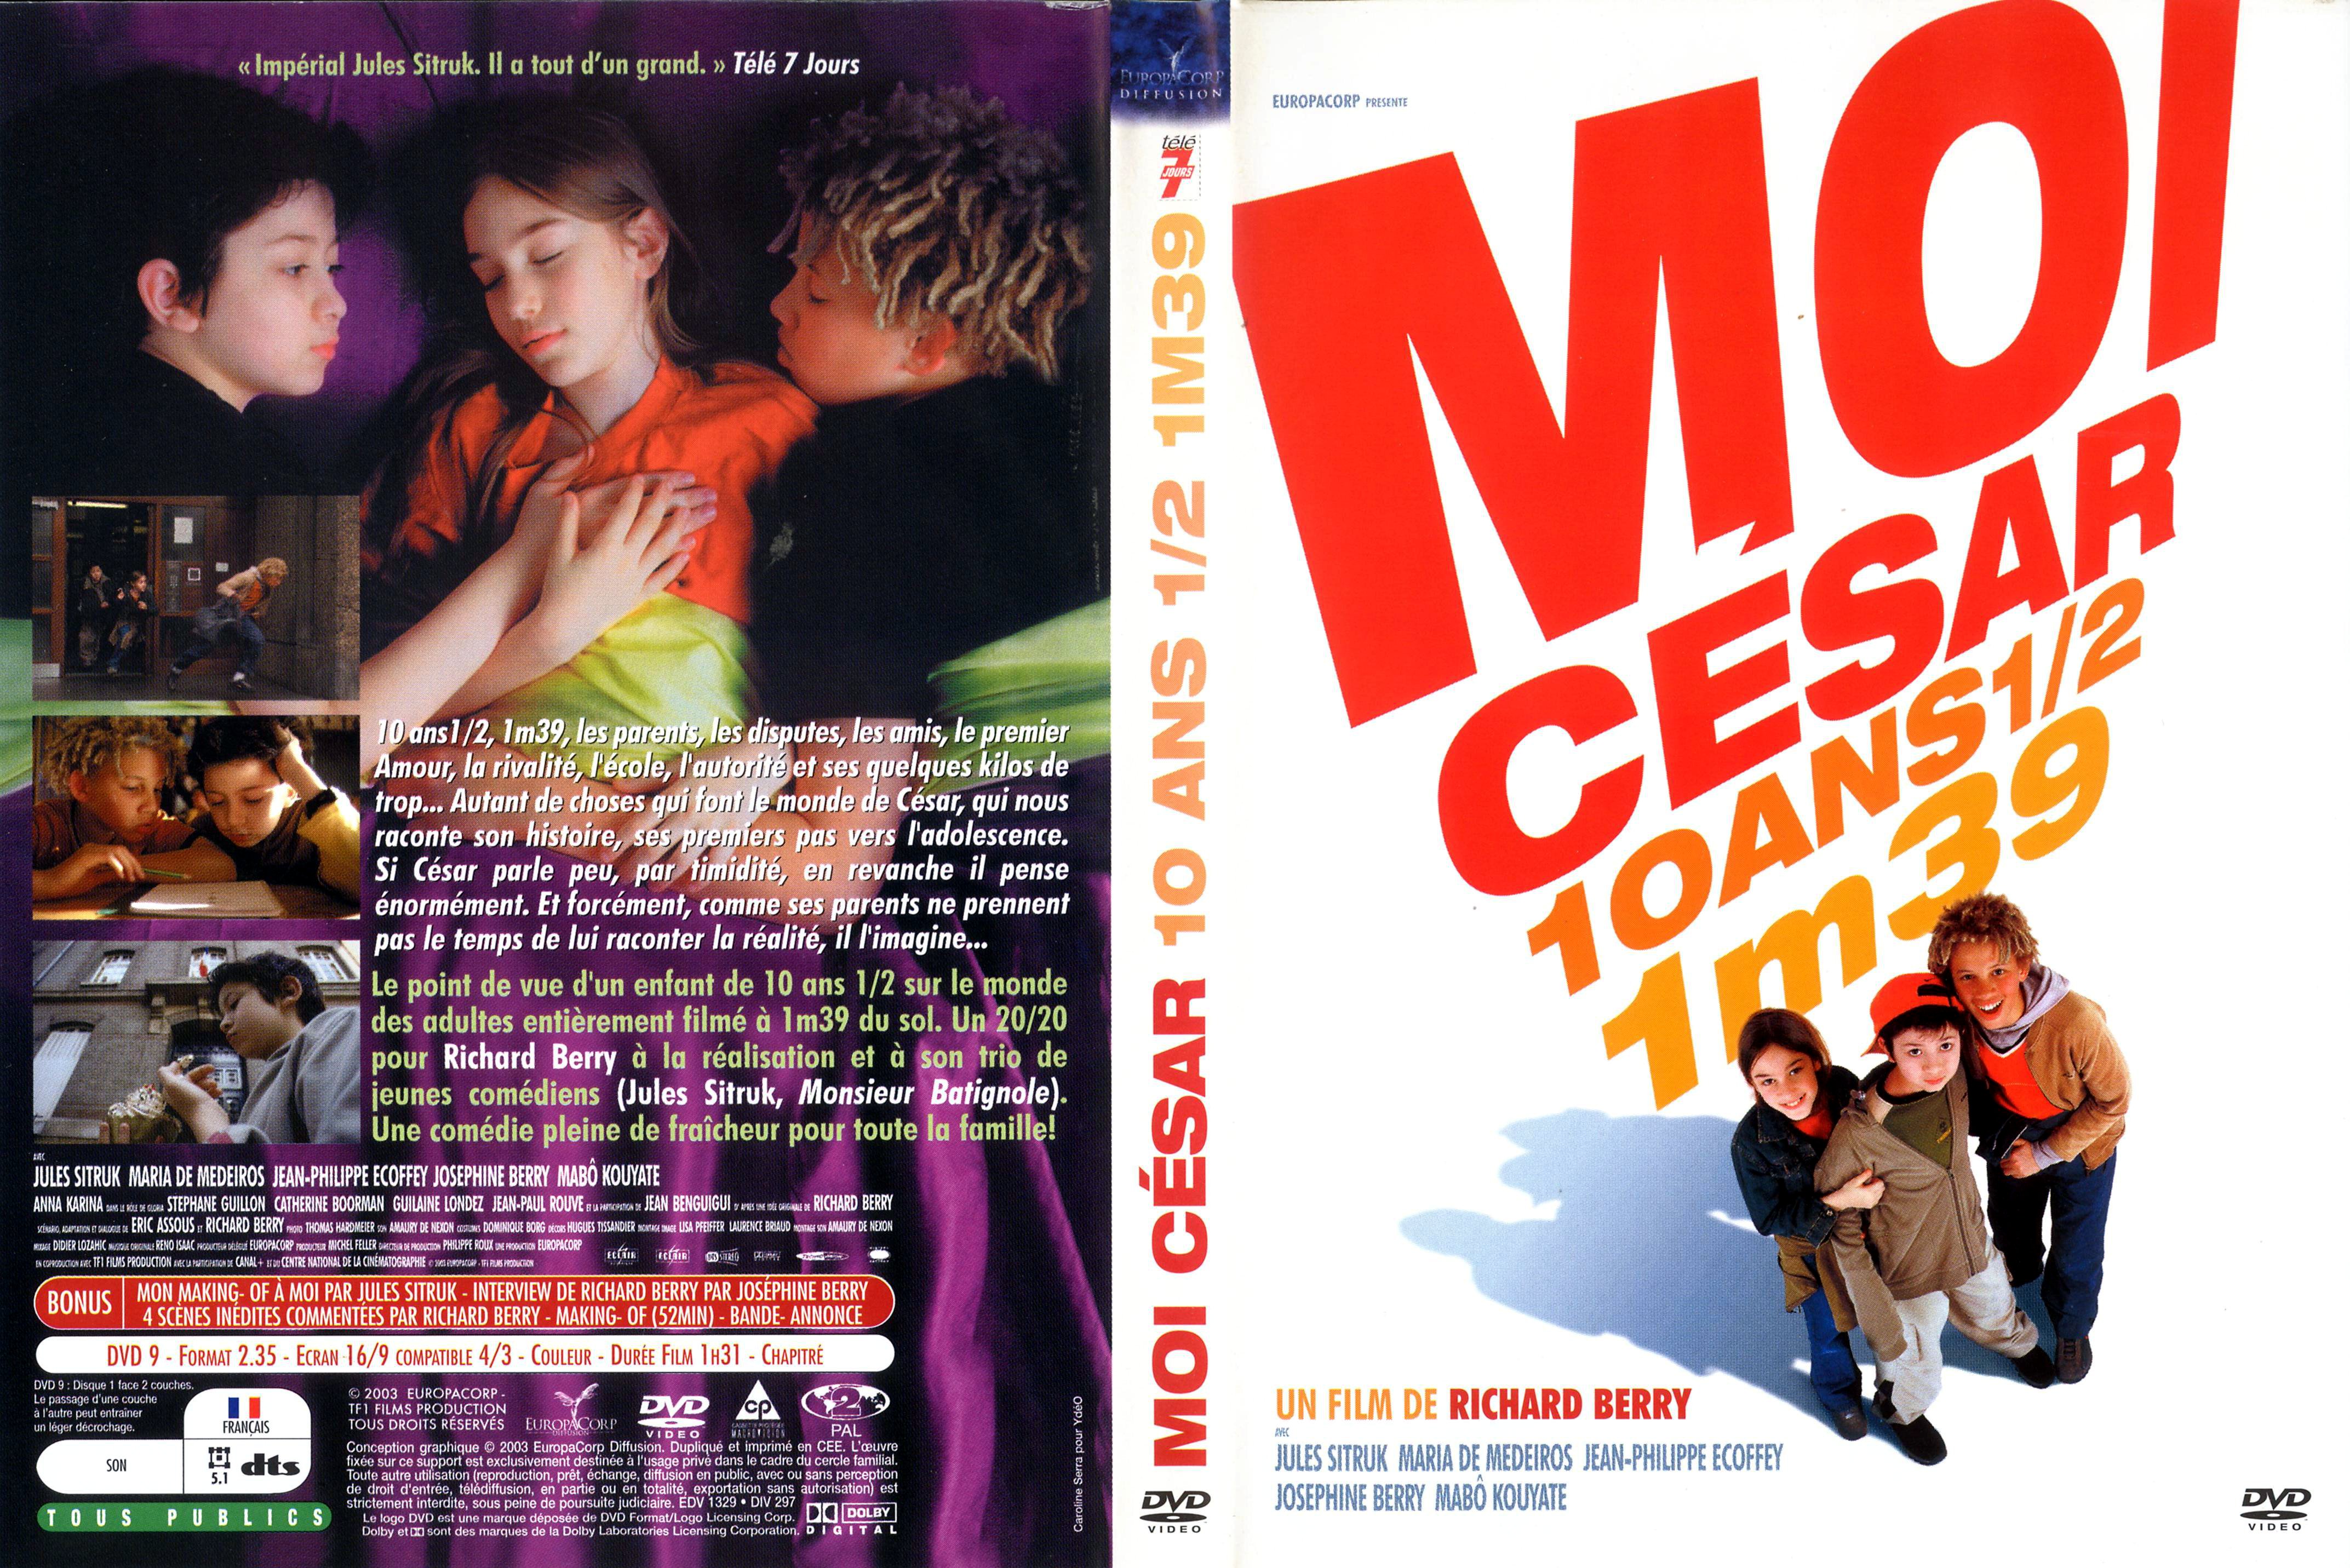 Jaquette DVD Moi Csar 10 ans et demi 1m39 v2